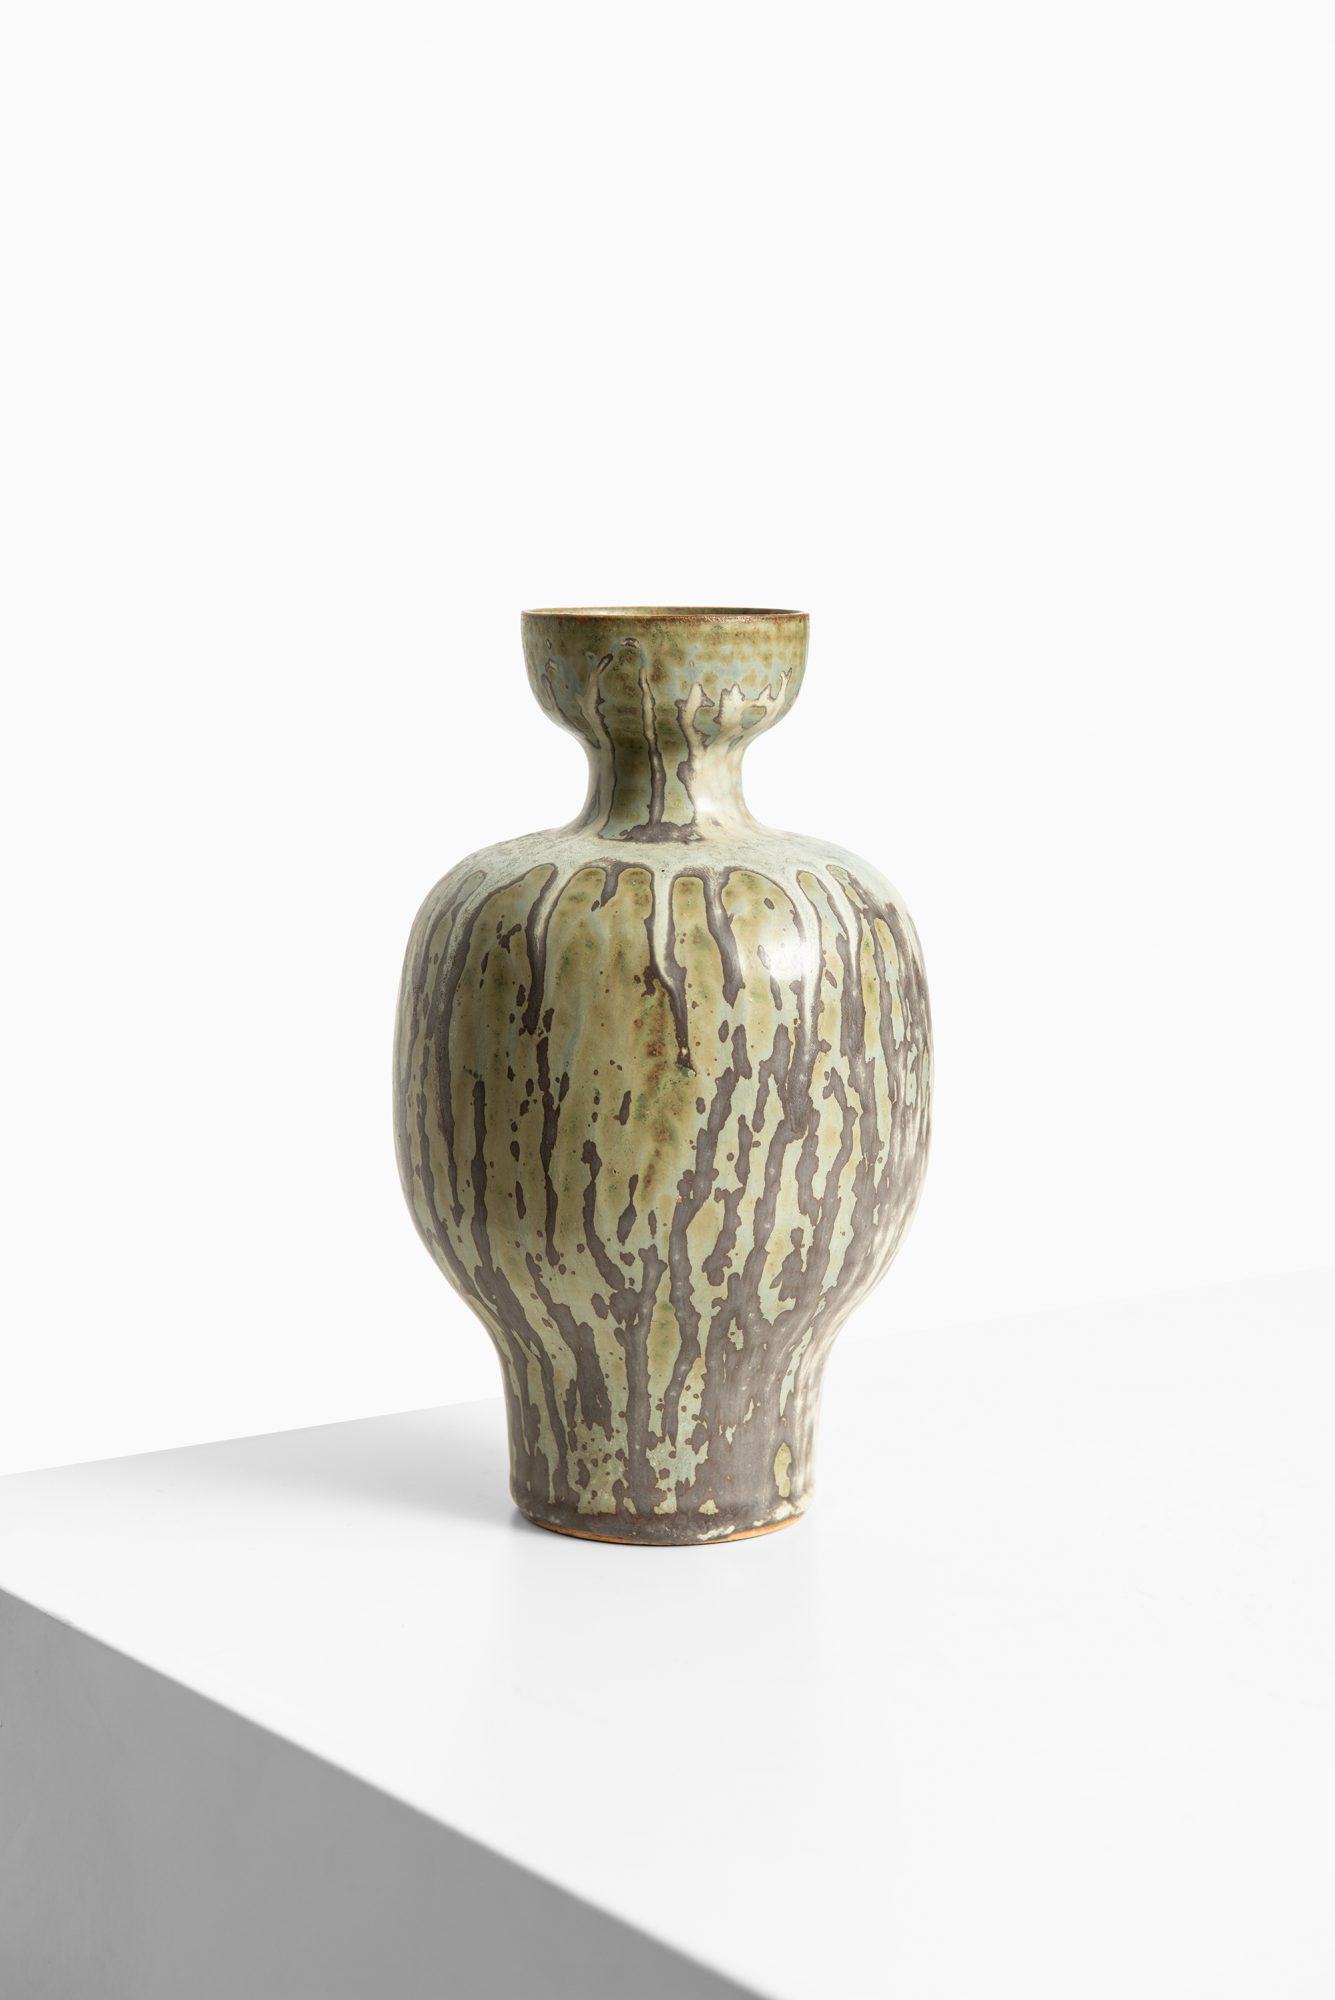 Arne & Jacob Bang ceramic vase at Studio Schalling